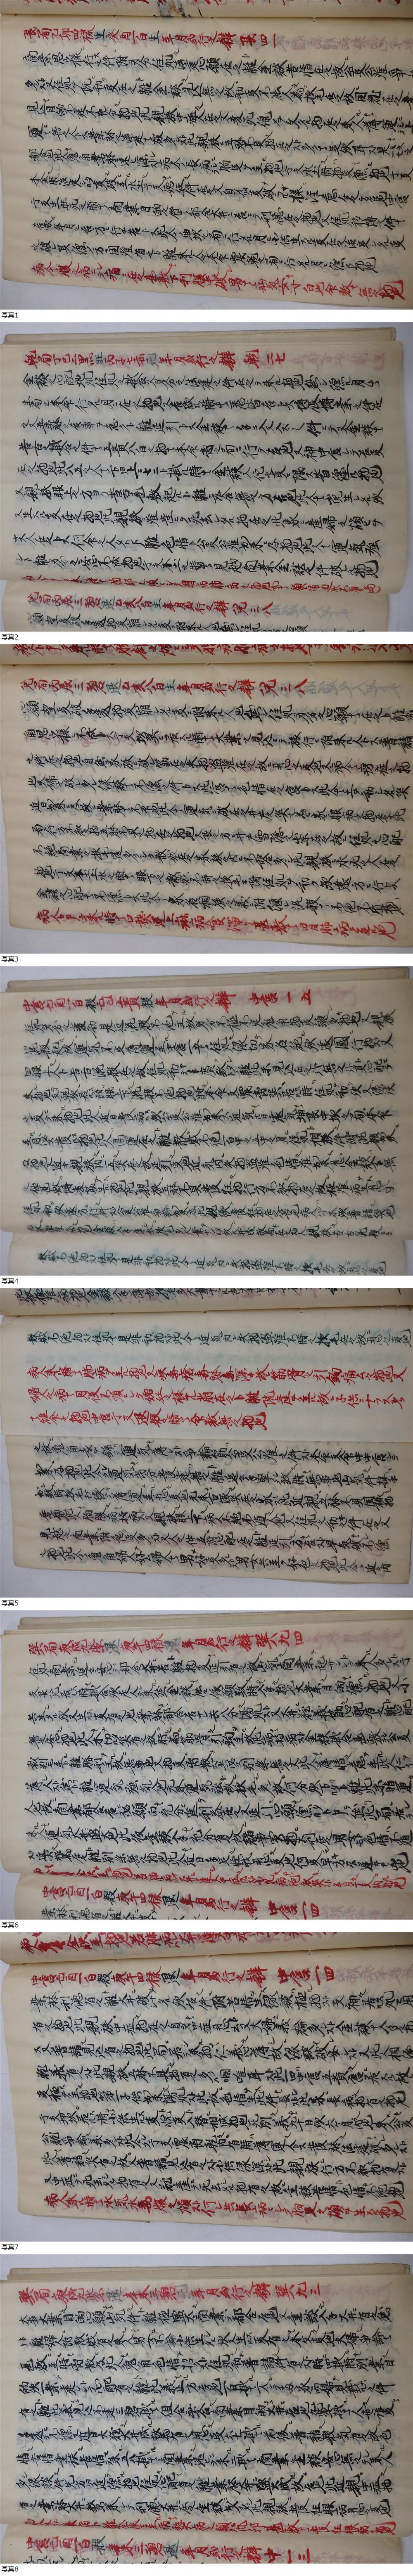 日本製78 易占 易学 九星学 占い 陰陽師 写本 秘伝書 相書 星辰術 九星術 占い師 肉筆 古文書 和本 本 和書 和書